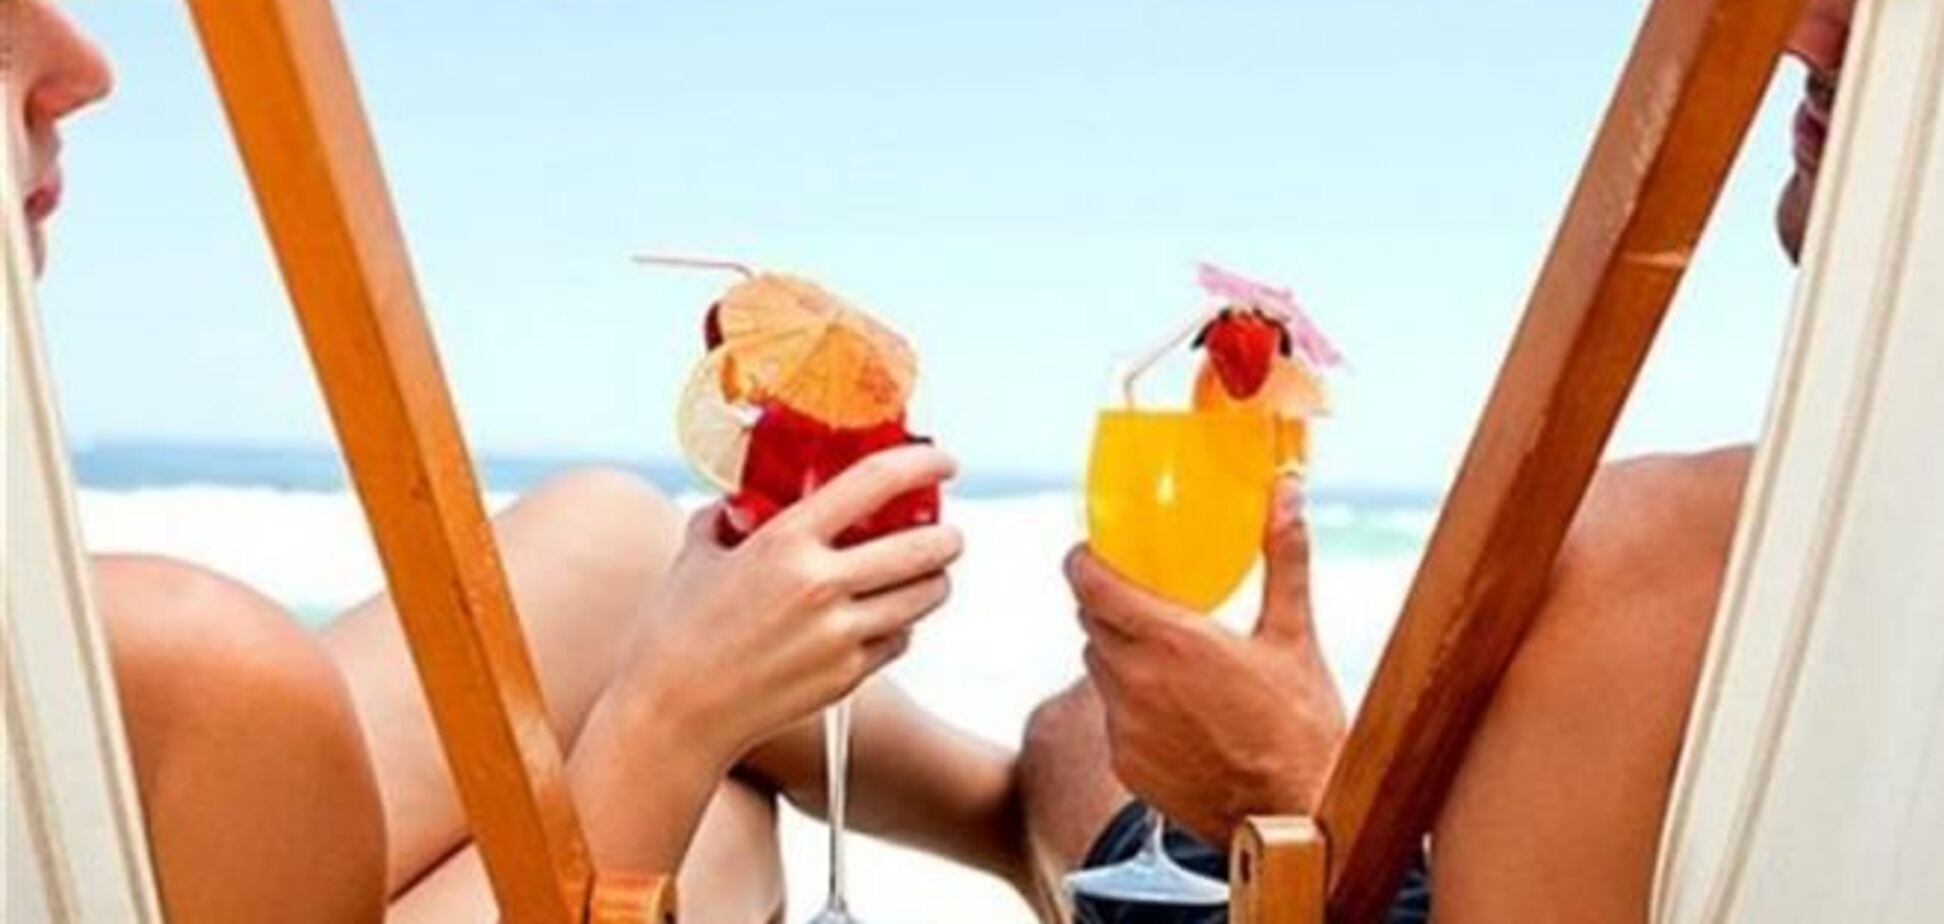 Алкогольные коктейли на солнце повышают риск рака